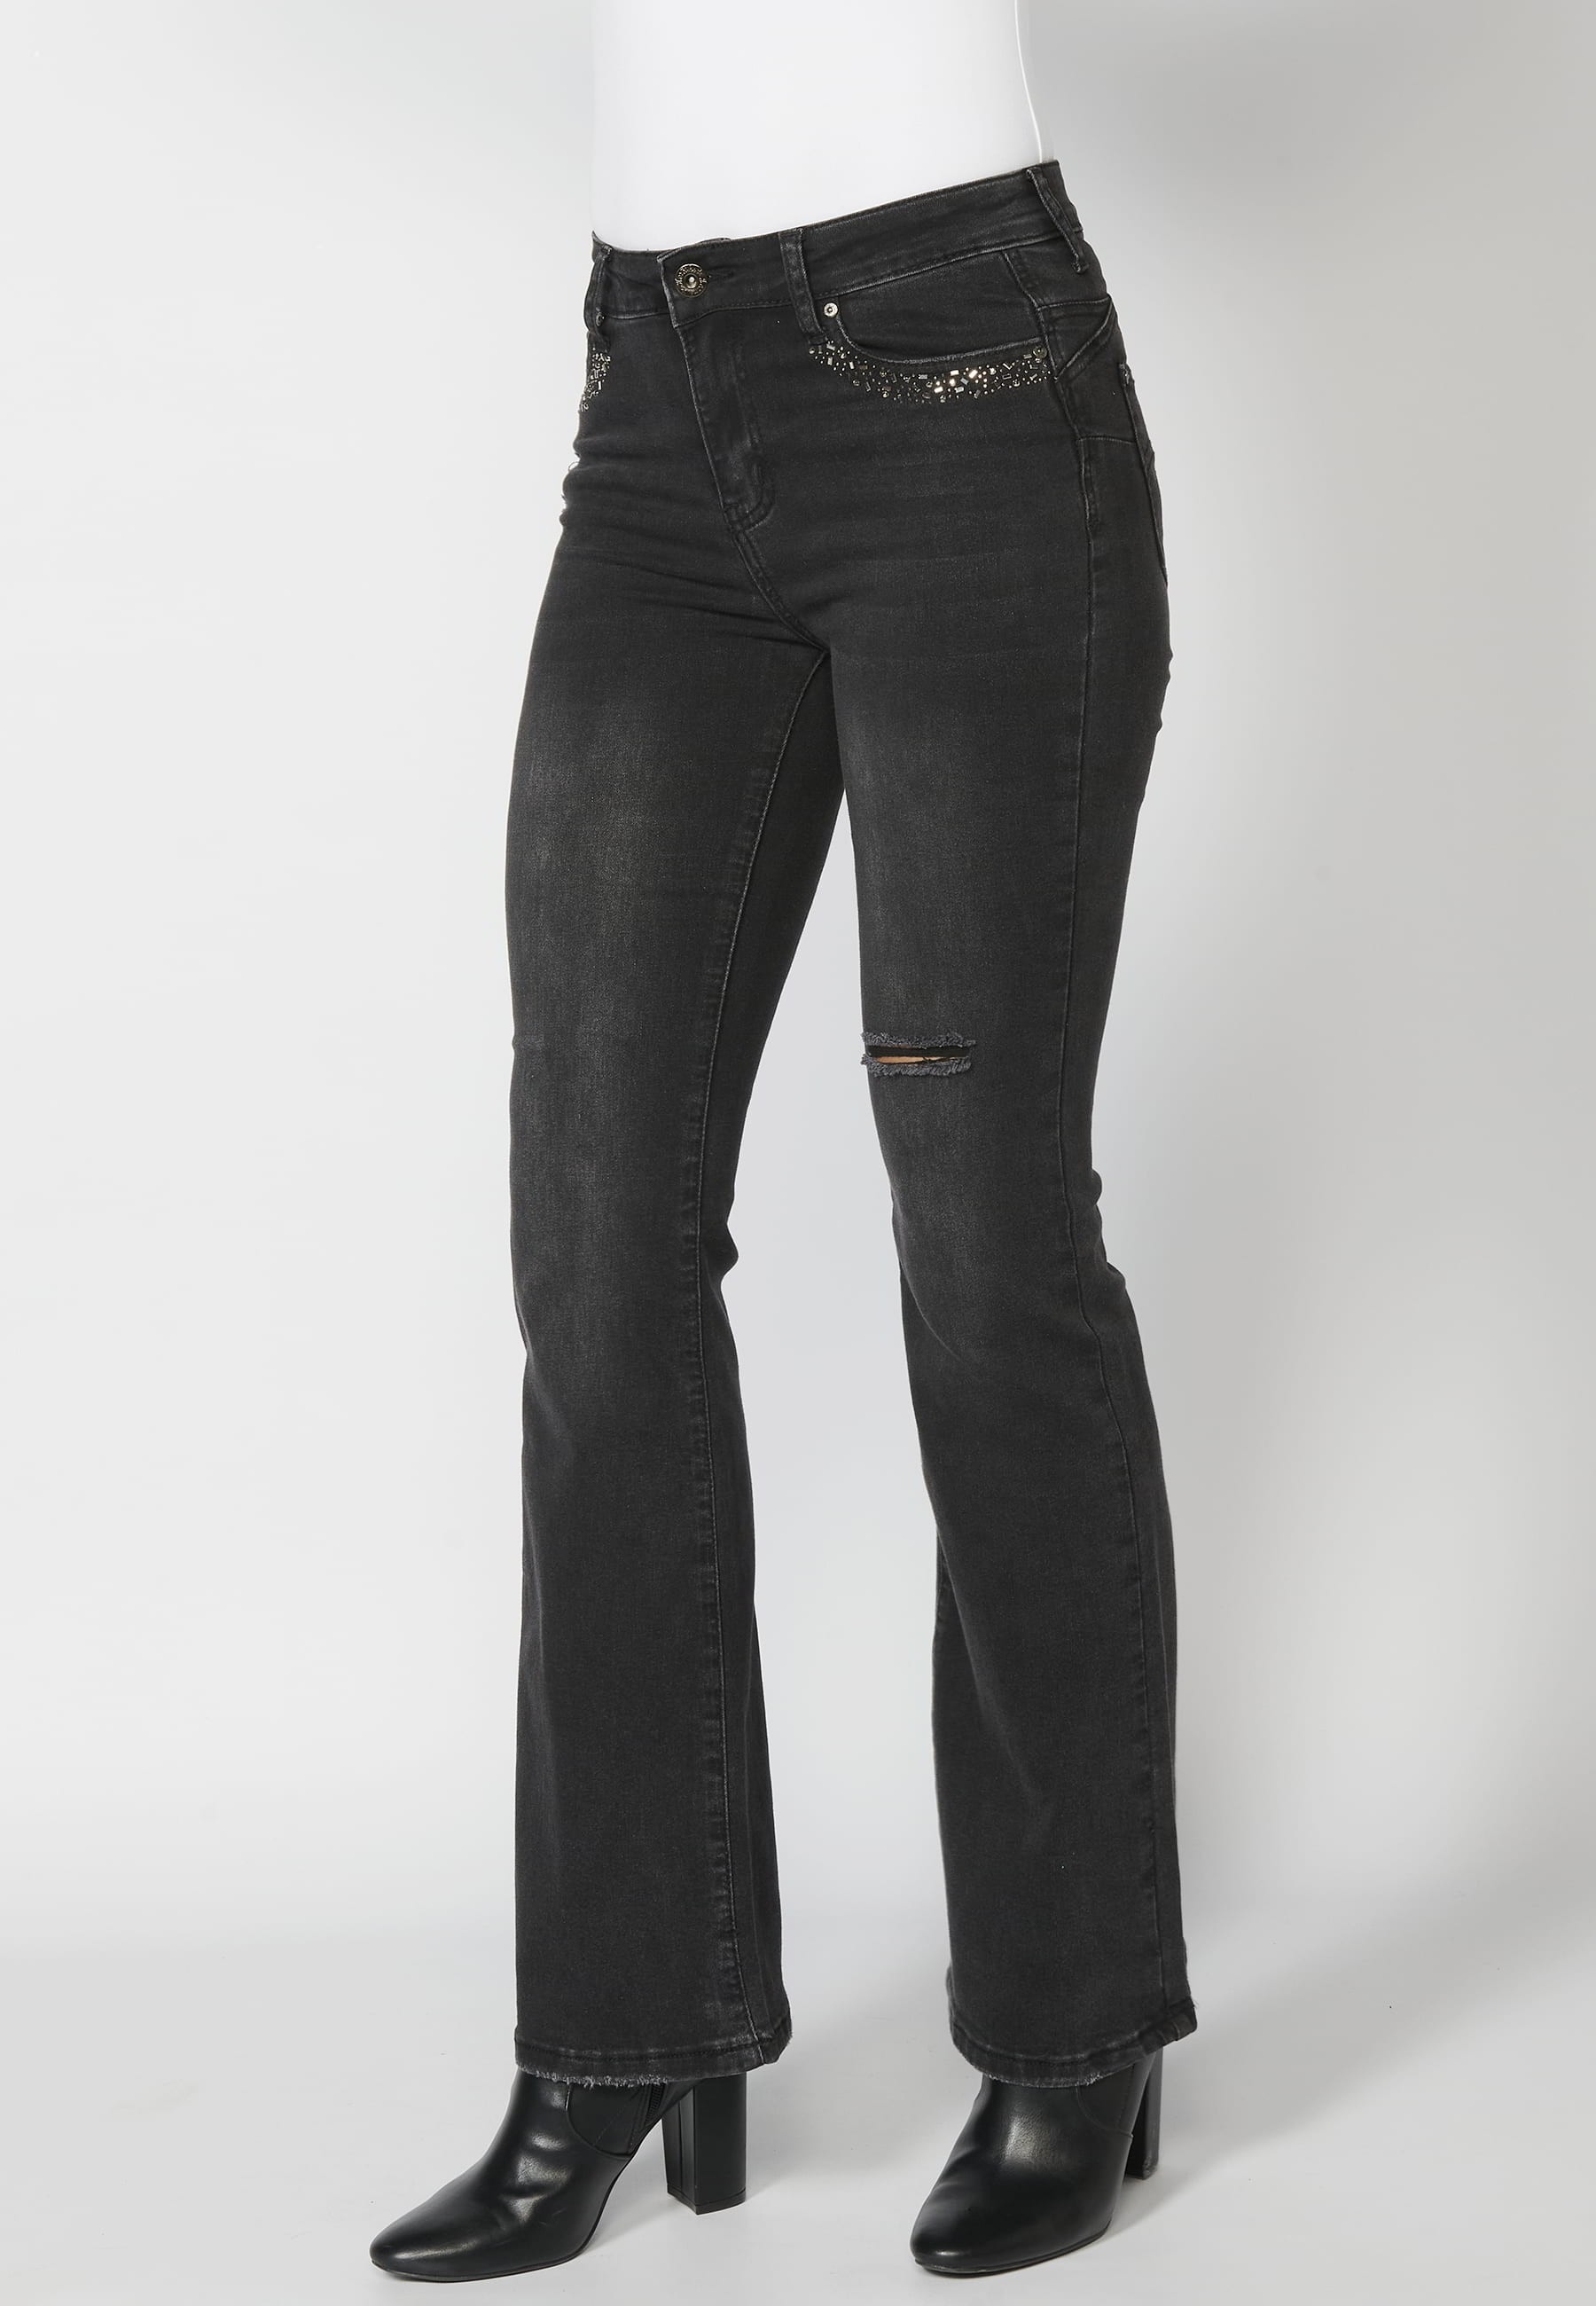 Lange Jeanshose mit Details in den Taschen in der Farbe Schwarz für Damen